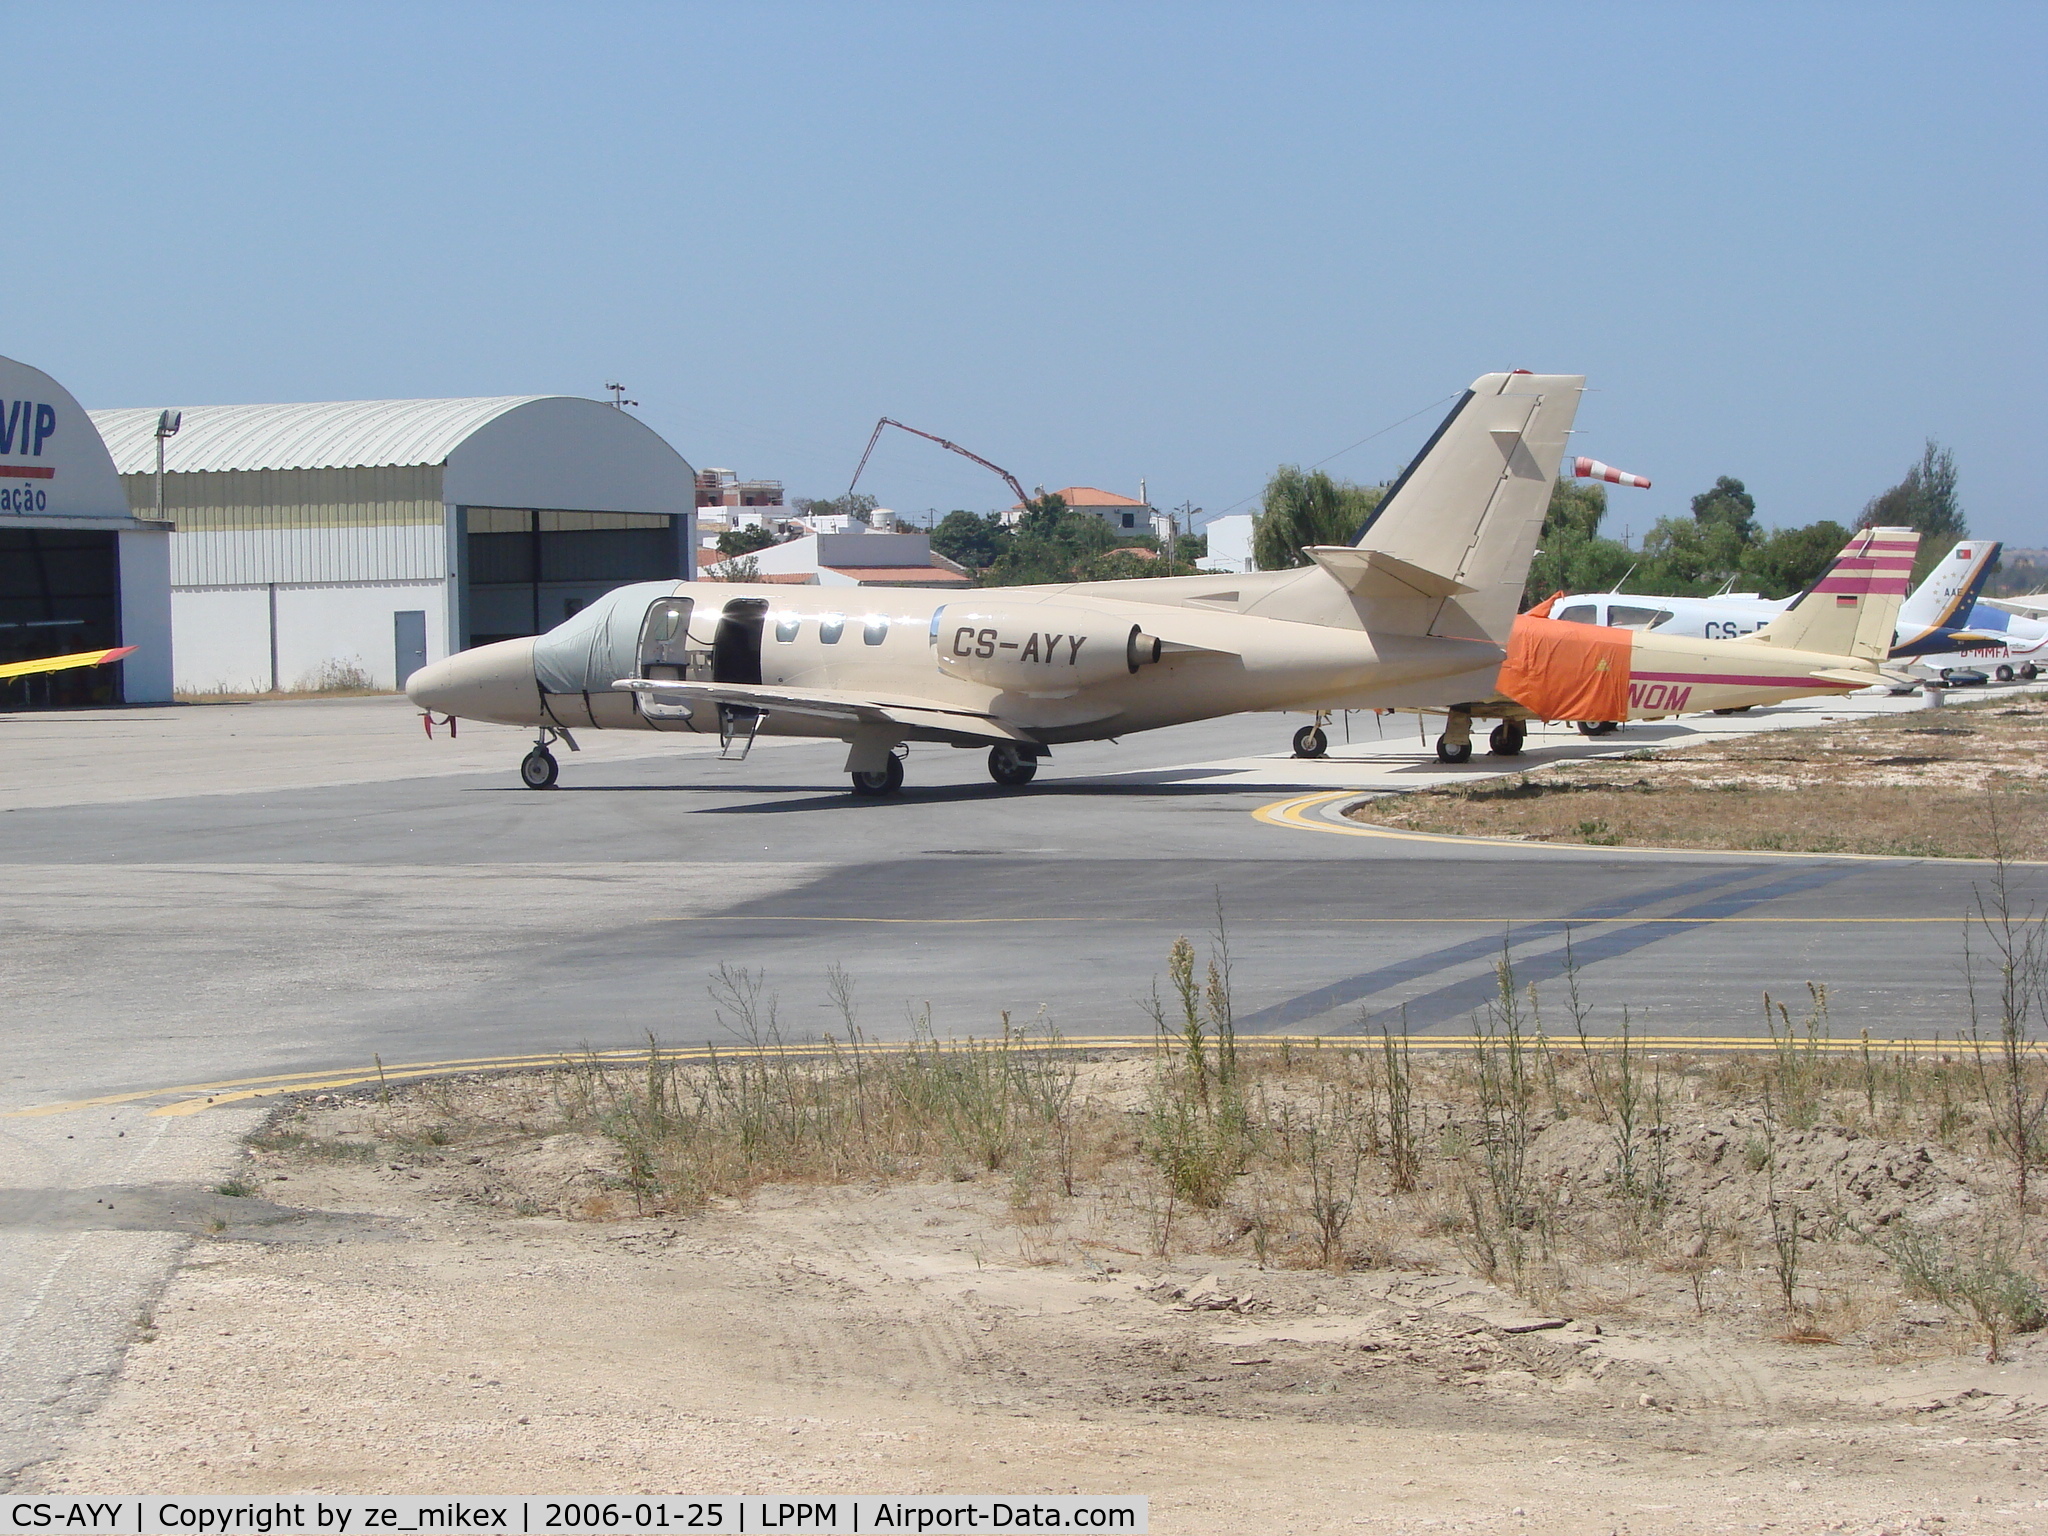 CS-AYY, 1980 Cessna 501 Citation I/SP C/N 501-0183, at portimão